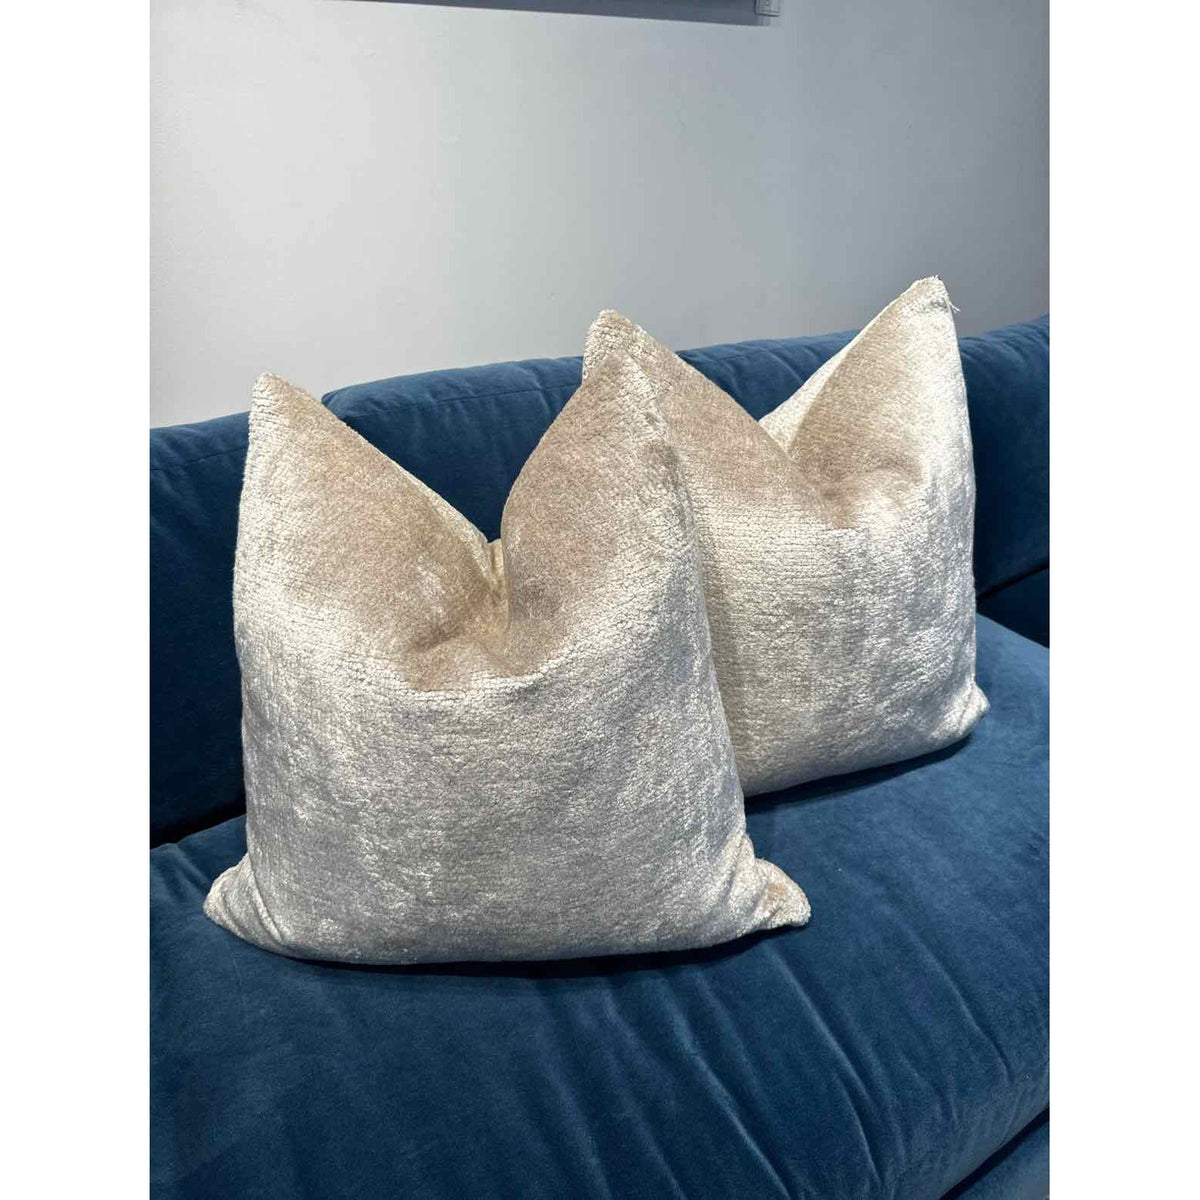 Pair of Silver Gray Chenille Velvet Pillows 20x20"